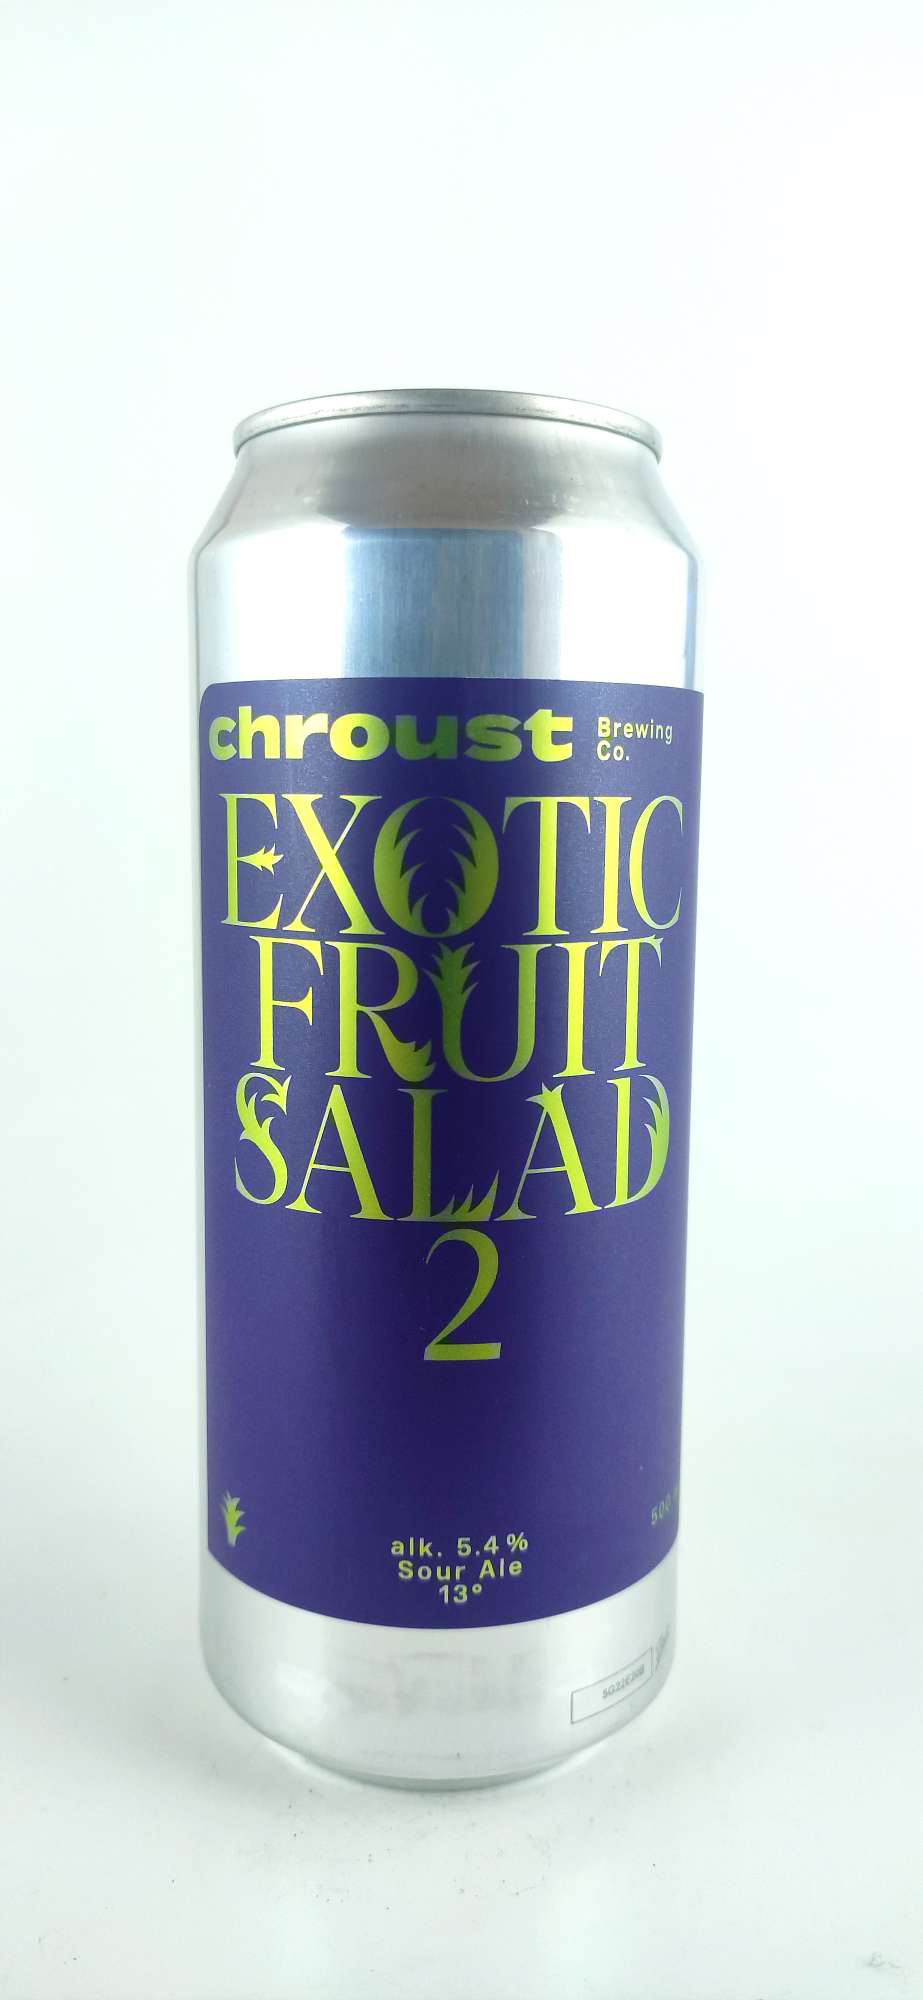 Chroust Exotis Fruit Salad 2 Sour ALE 13°